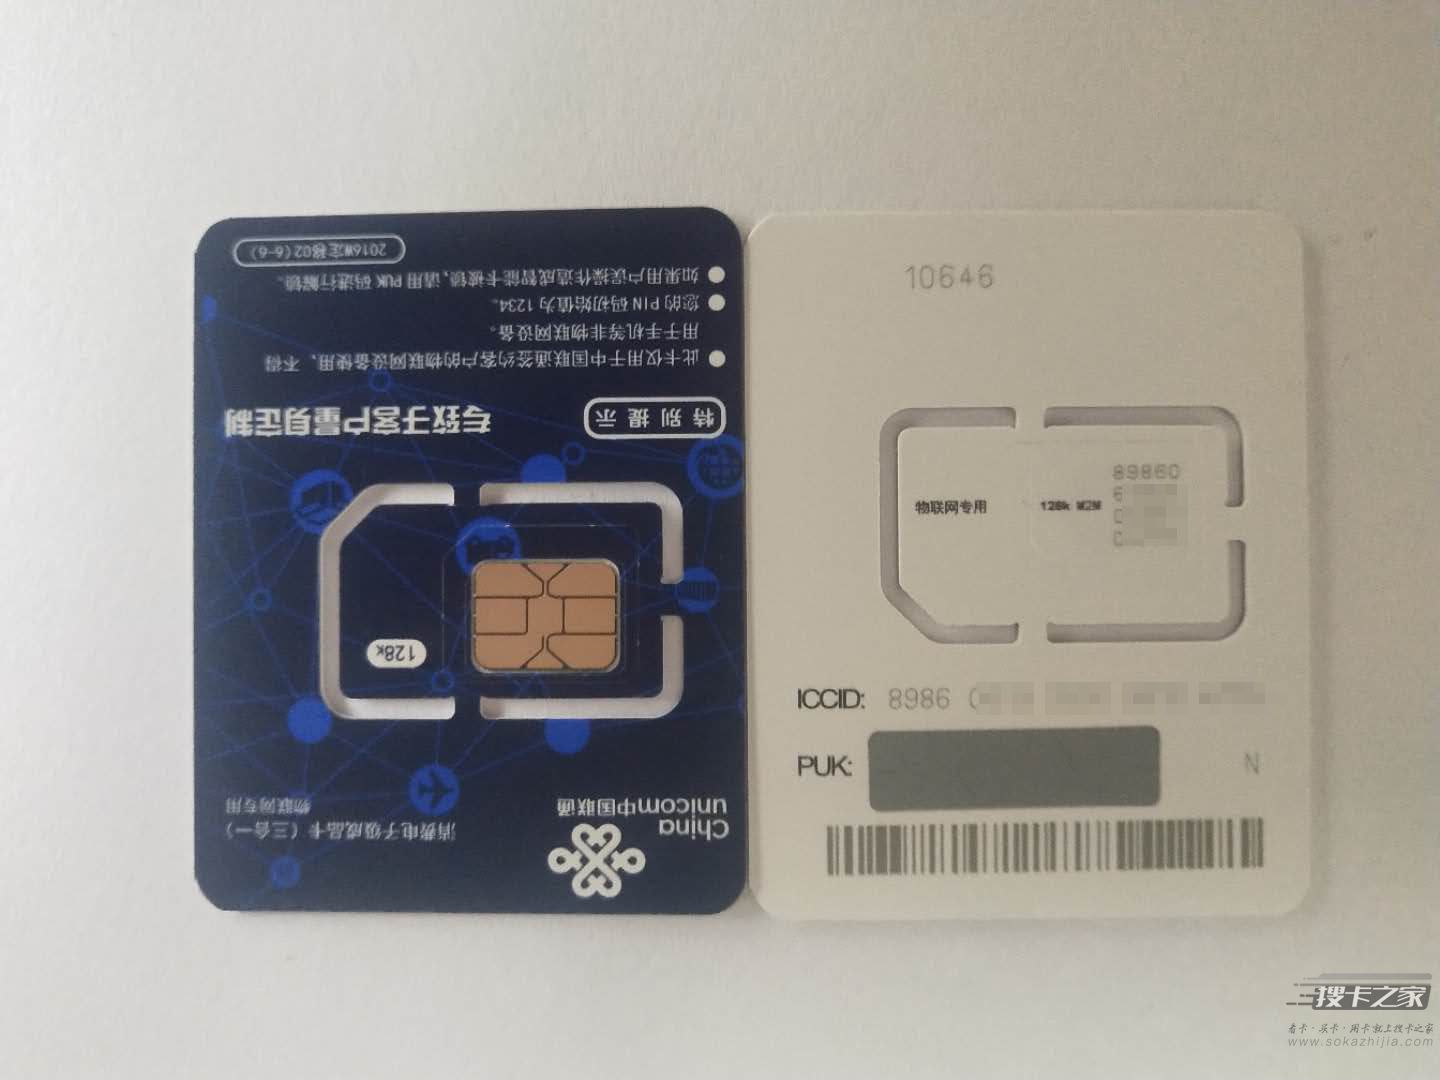 4G物联网PDA流量卡(1年有效) - 耗材 - 云际科技官网